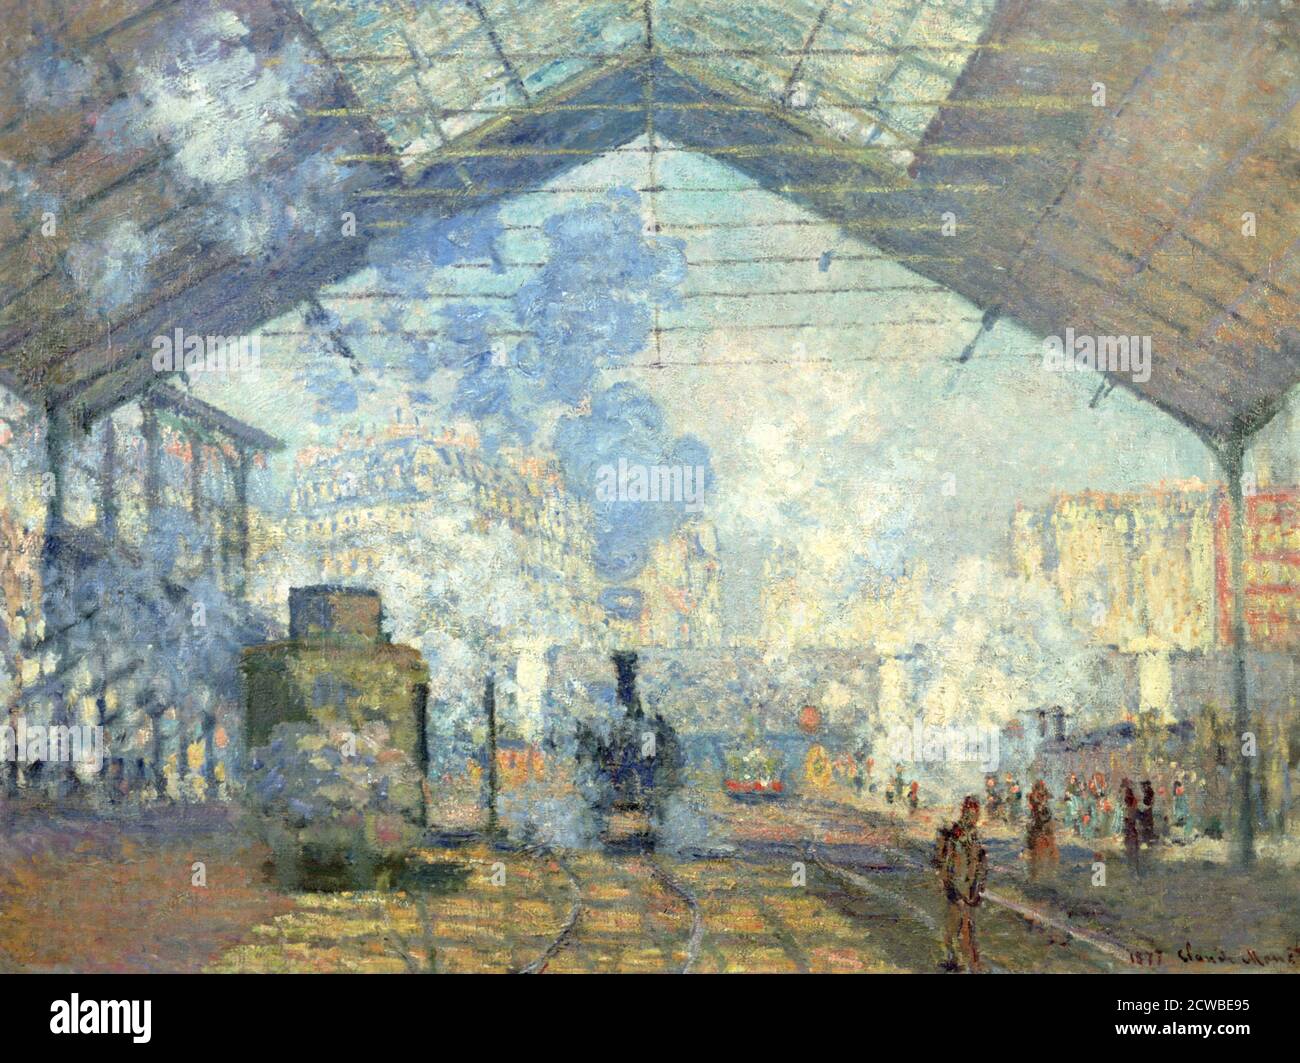 Gare Saint Lazare, Paris', 1877. Artista: Claude Monet. Monet era un pittore francese, un fondatore della pittura impressionista francese e il più coerente e prolifico praticante della filosofia dei movimenti. Foto Stock